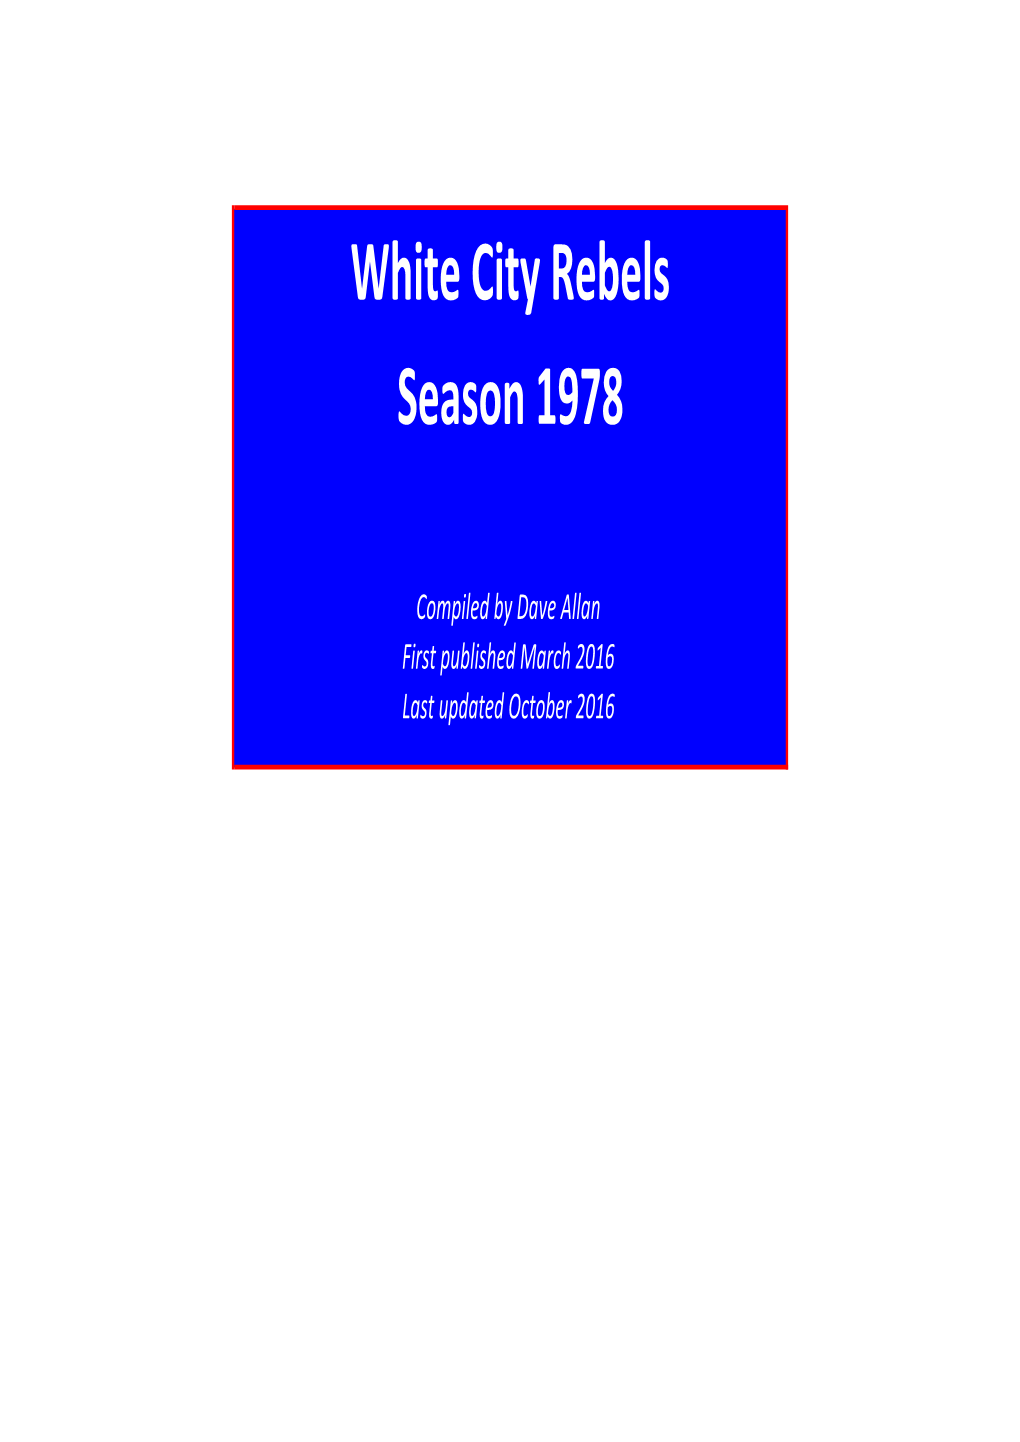 White City Rebels Season 1978